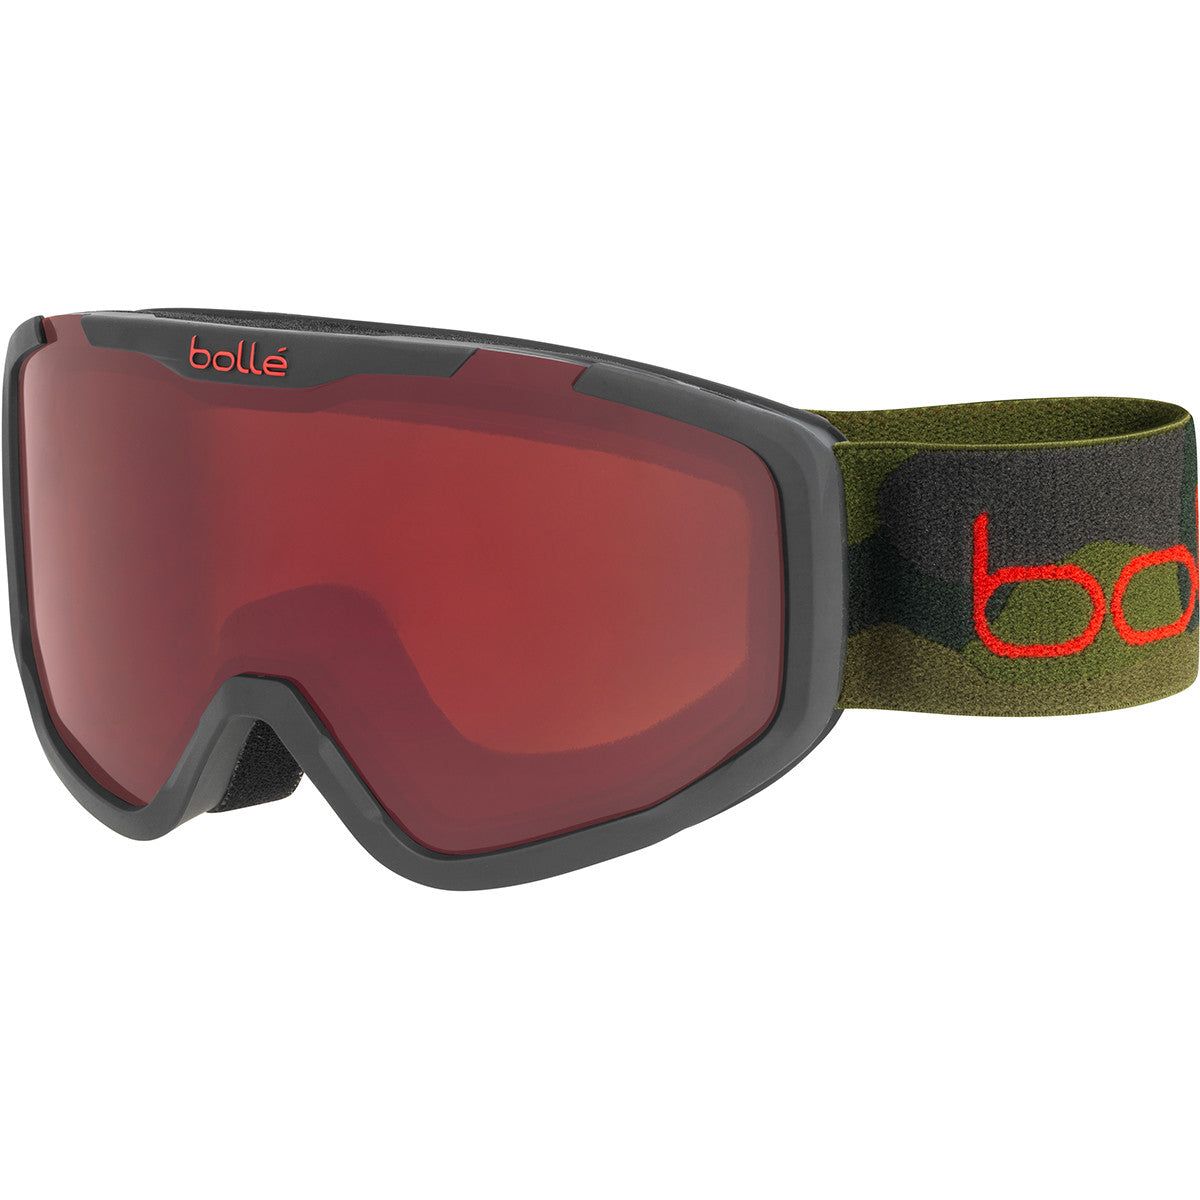 Bollé Rocket Plus - Gafas de esquí - Mujer